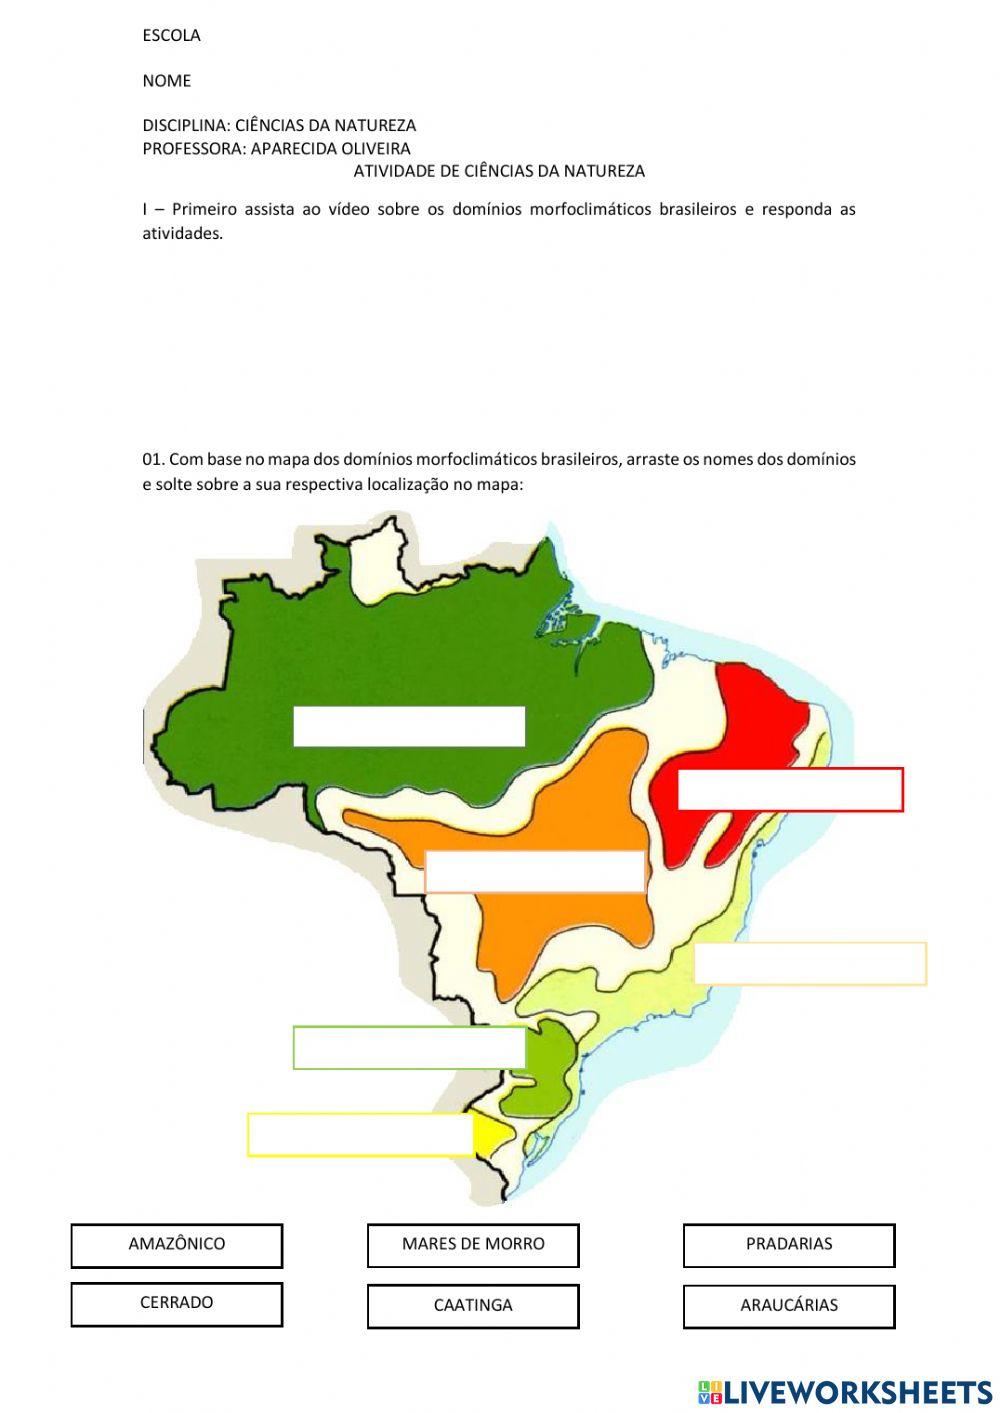 Domínios morfoclimáticos do Brasil: quais são? - Brasil Escola